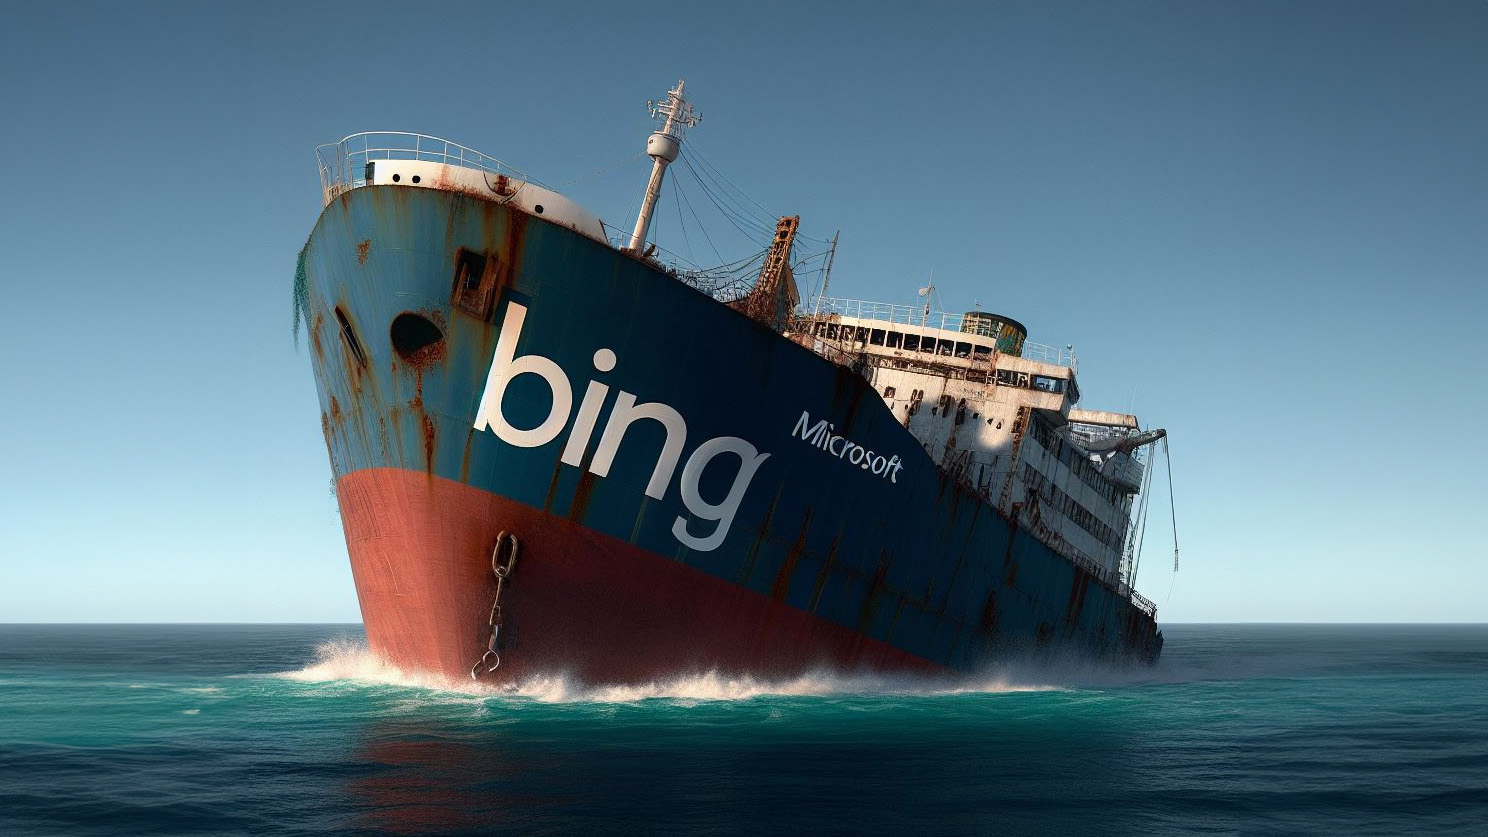 Bing versinkt im Meer